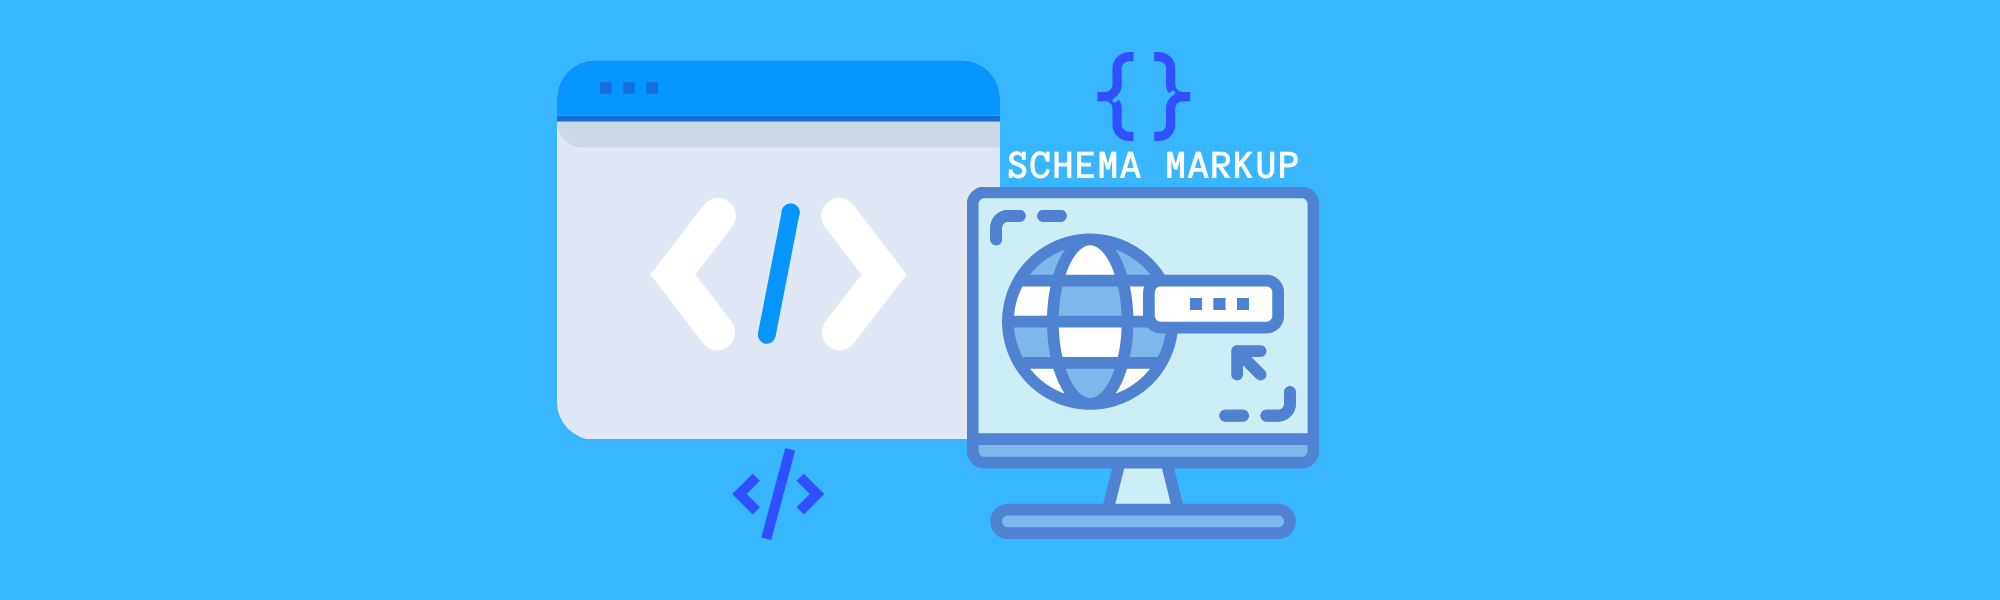 Schema Markup Best Practices